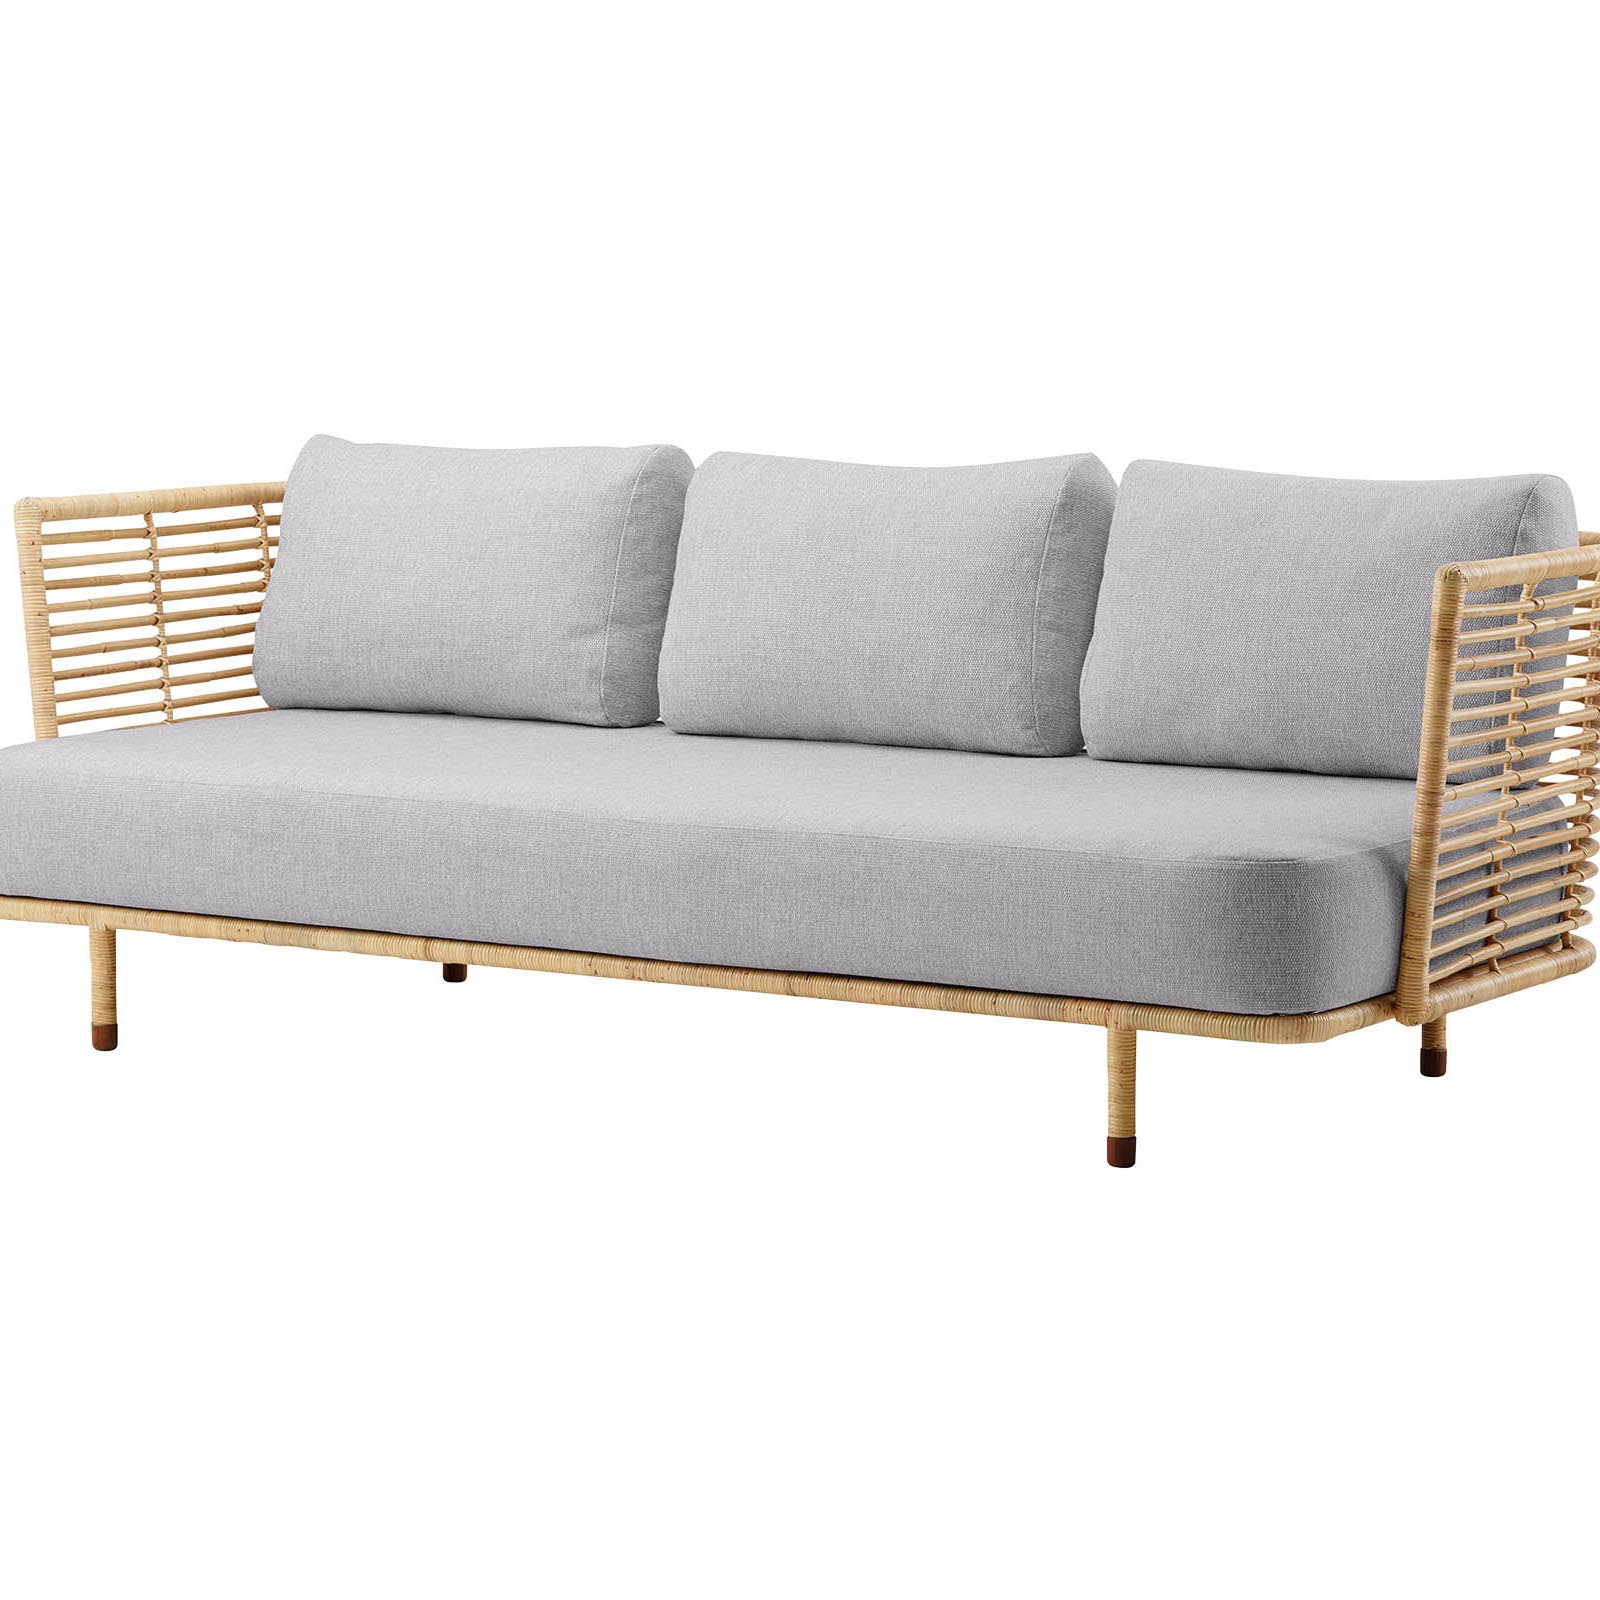 Sense 3-Sitzer Sofa aus Rattan in Natural mit Kissen aus Cane-line Natté in Light Grey